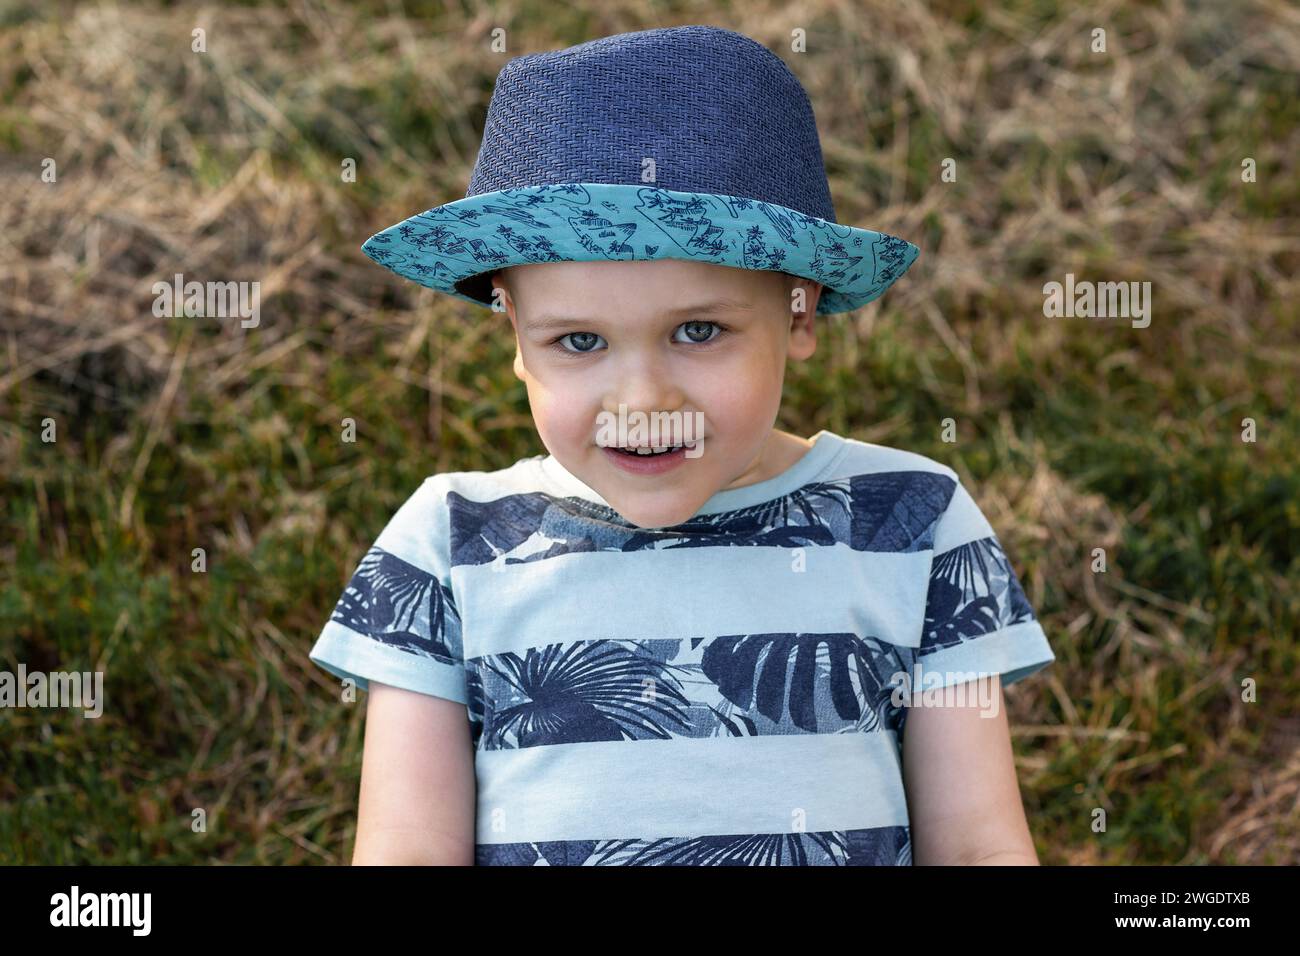 Portrait d'un garçon caucasien joyeux dans un chapeau bleu sur un fond d'herbe sèche. Banque D'Images